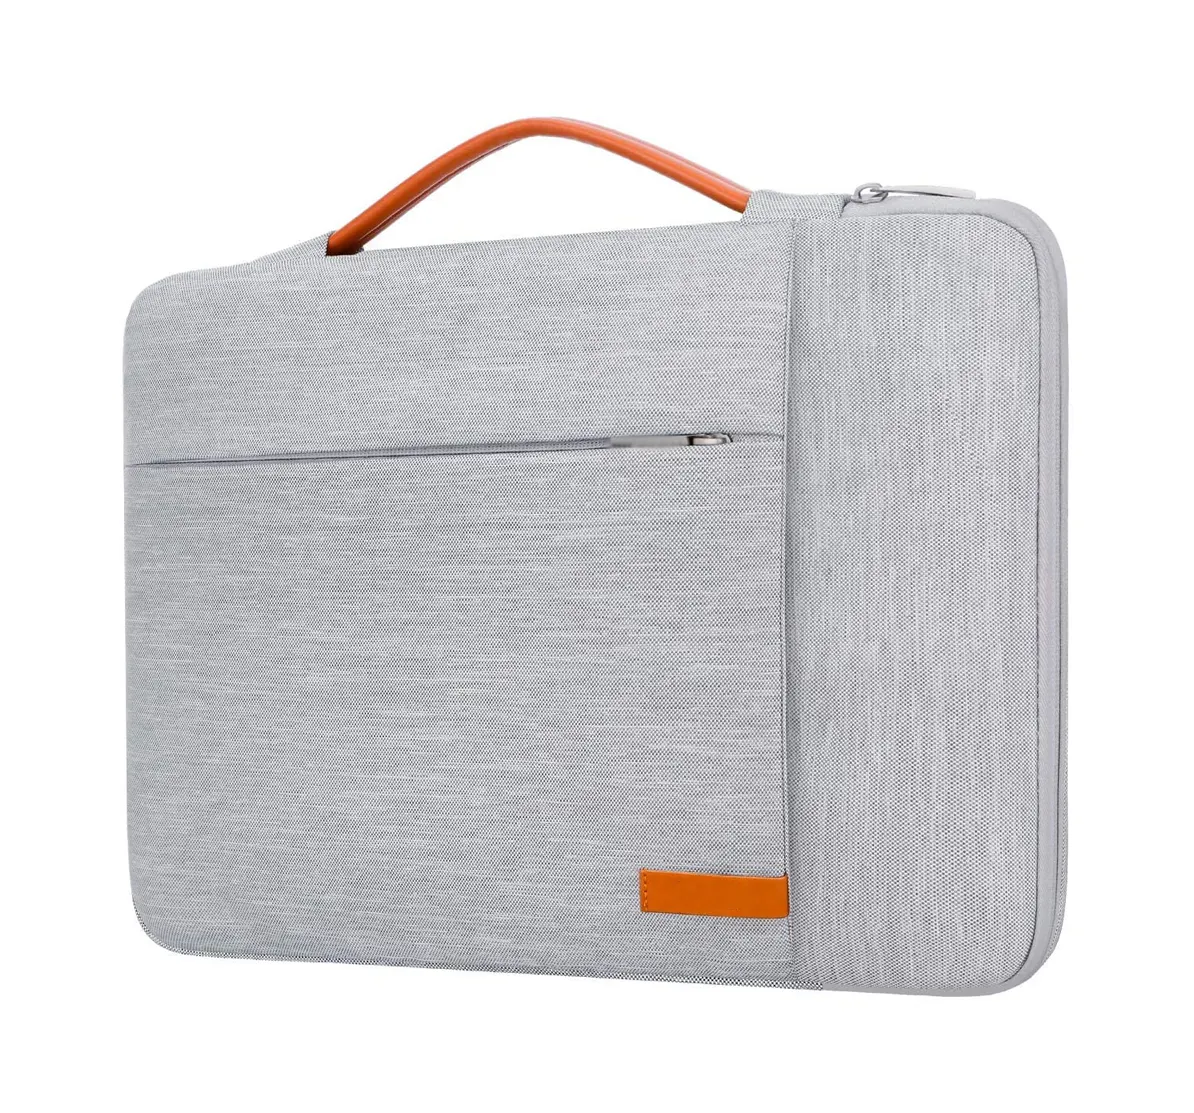 MacBookAirと互換性のあるハンドルとポケット付きのプレミアム品質の耐水性キャリングラップトップスリーブケースバッグ